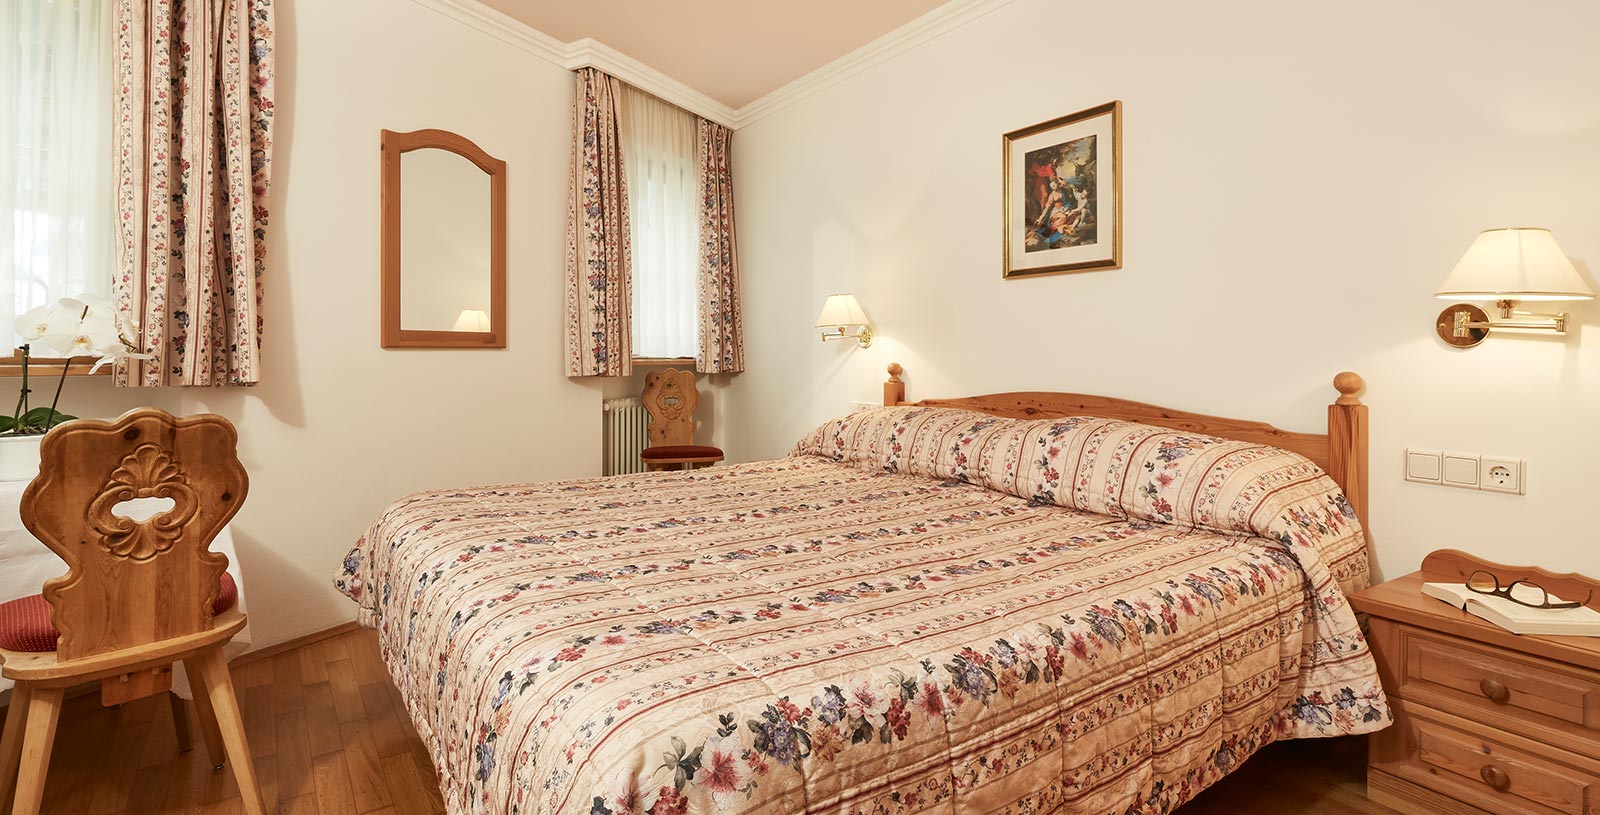 das kingsize Bett einer Ferienwohnung in Corvara, Vorhänge und Bettwäsche tragen das selbe Blumenmotiv